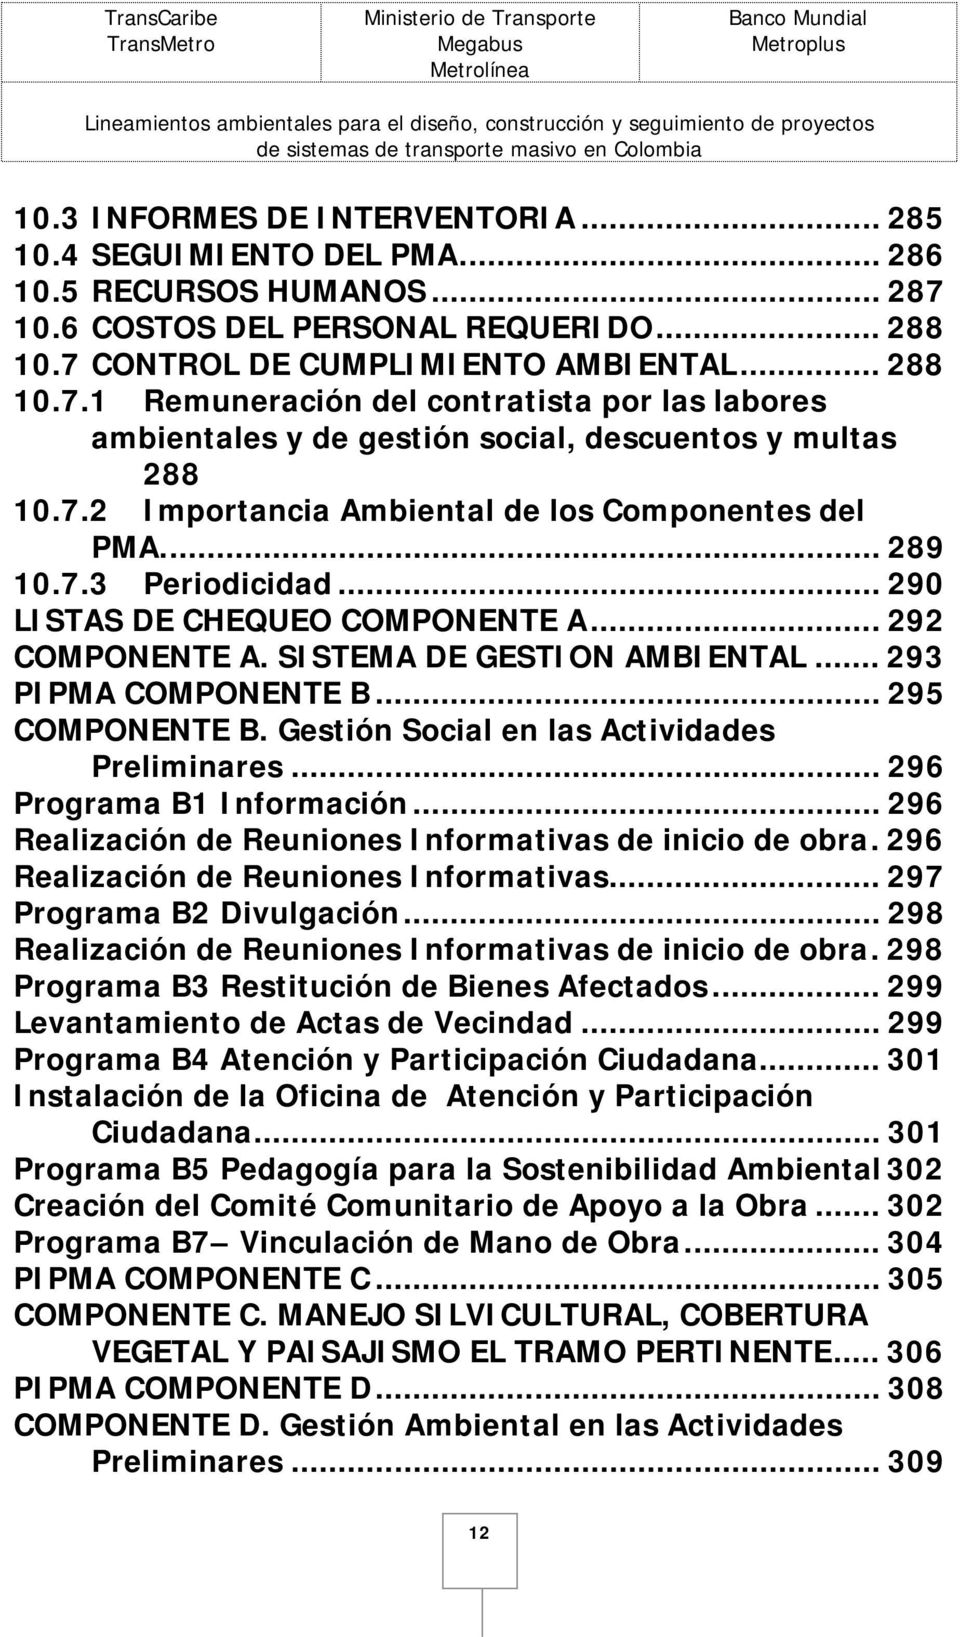 7.2 Importancia Ambiental de los Componentes del PMA... 289 10.7.3 Periodicidad... 290 LISTAS DE CHEQUEO COMPONENTE A... 292 COMPONENTE A. SISTEMA DE GESTION AMBIENTAL... 293 PIPMA COMPONENTE B.